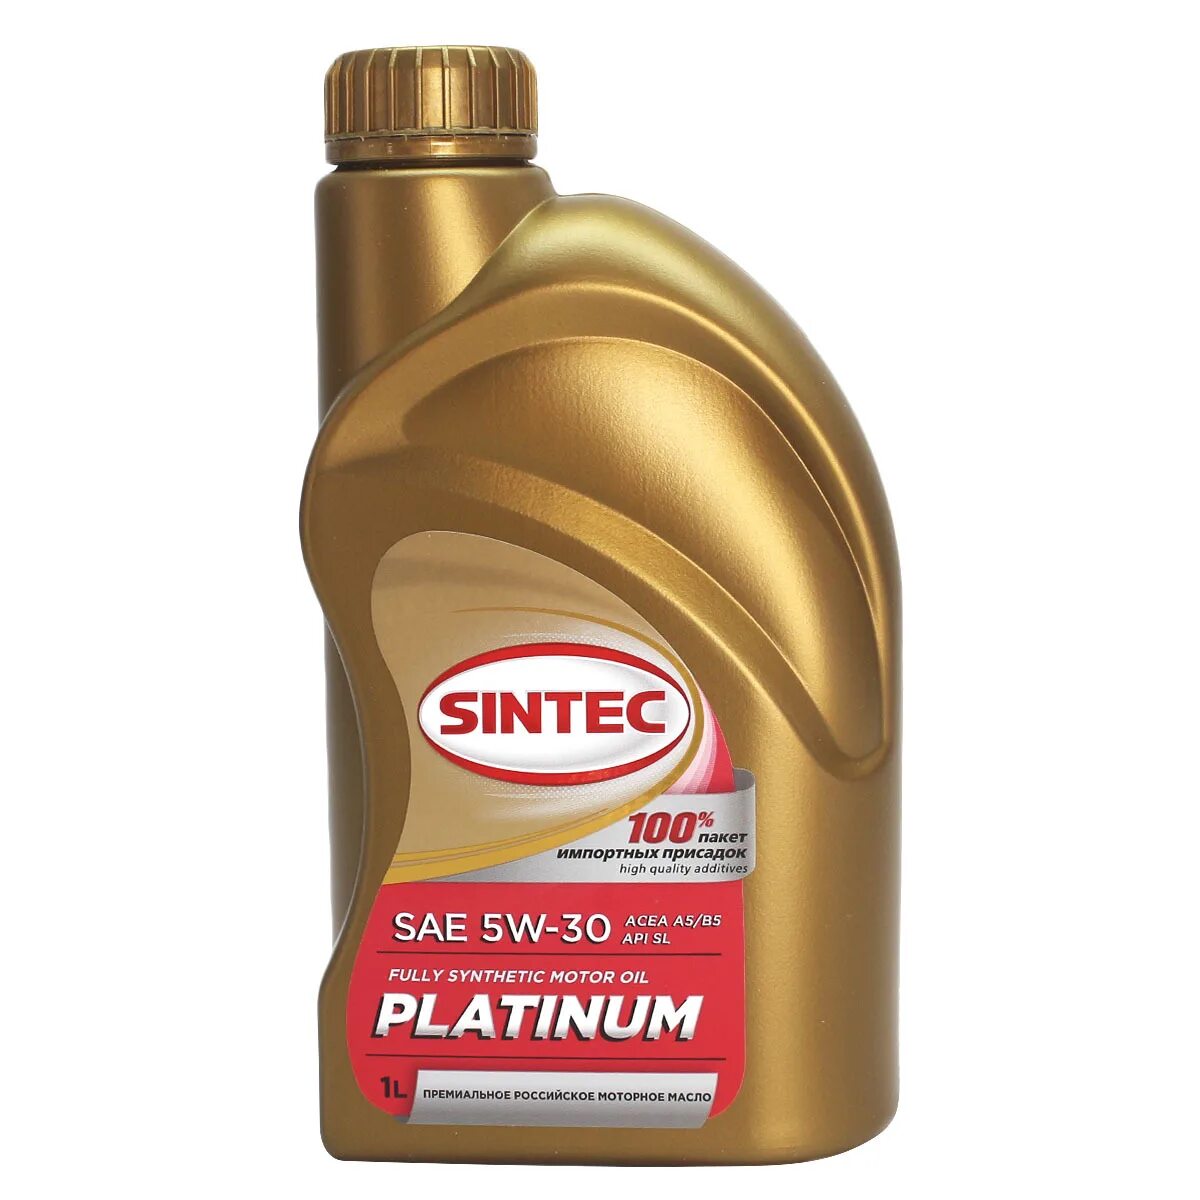 Sintec Platinum 5w-30. Sintec Platinum 5w-30 SL/CF. Sintec Platinum а5 5w-30. Sintec 5w30 Platinum SL.